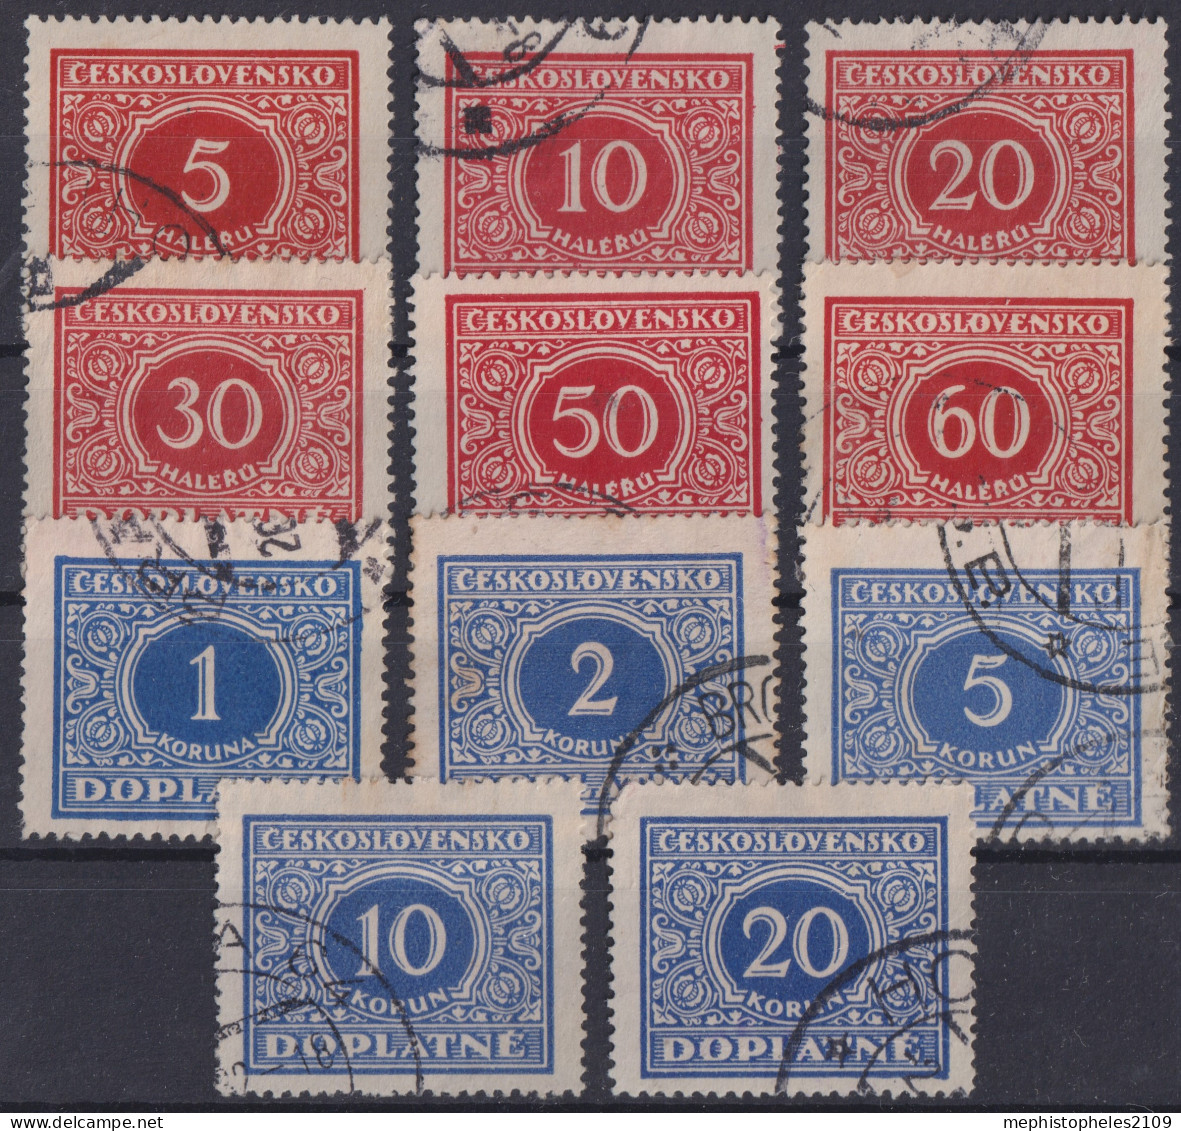 CZECHOSLOVAKIA 1928 - Canceled - Sc# J58-J61, J63-J69 - Postage Due - Postage Due